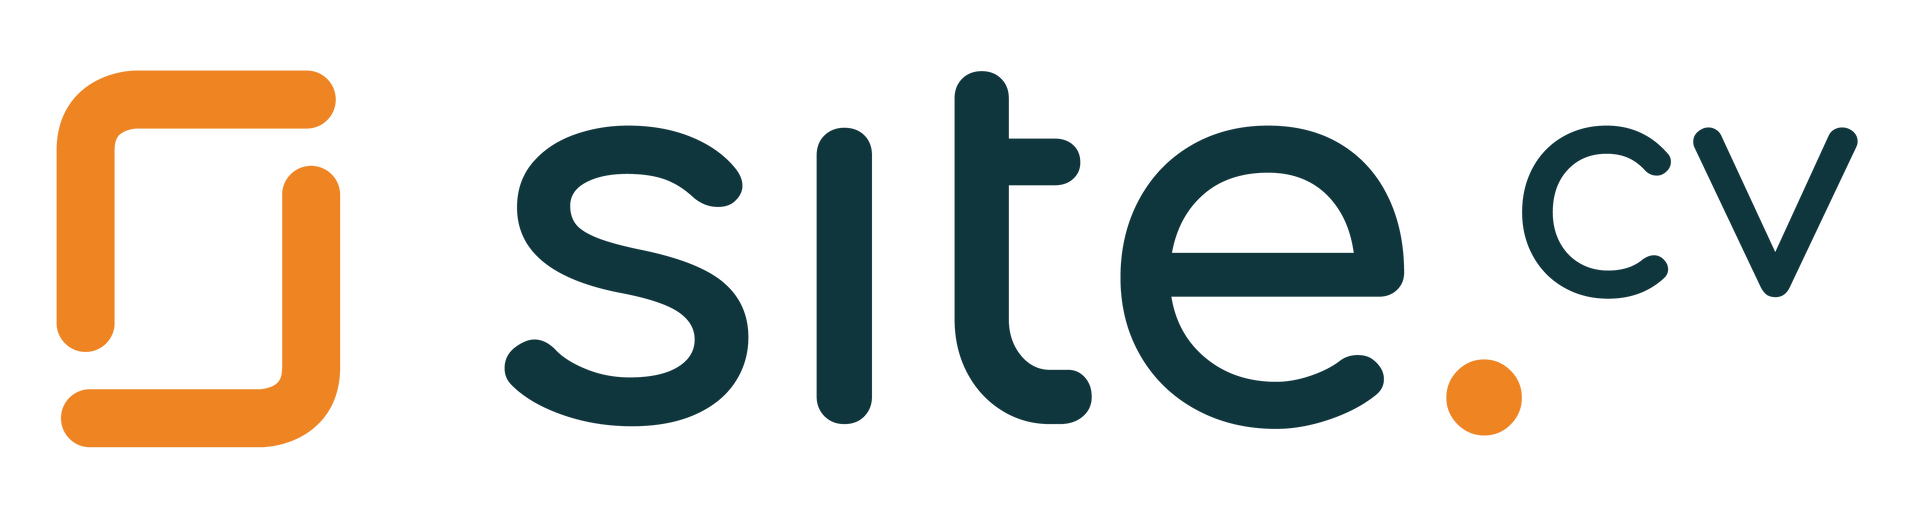 logotipo-site